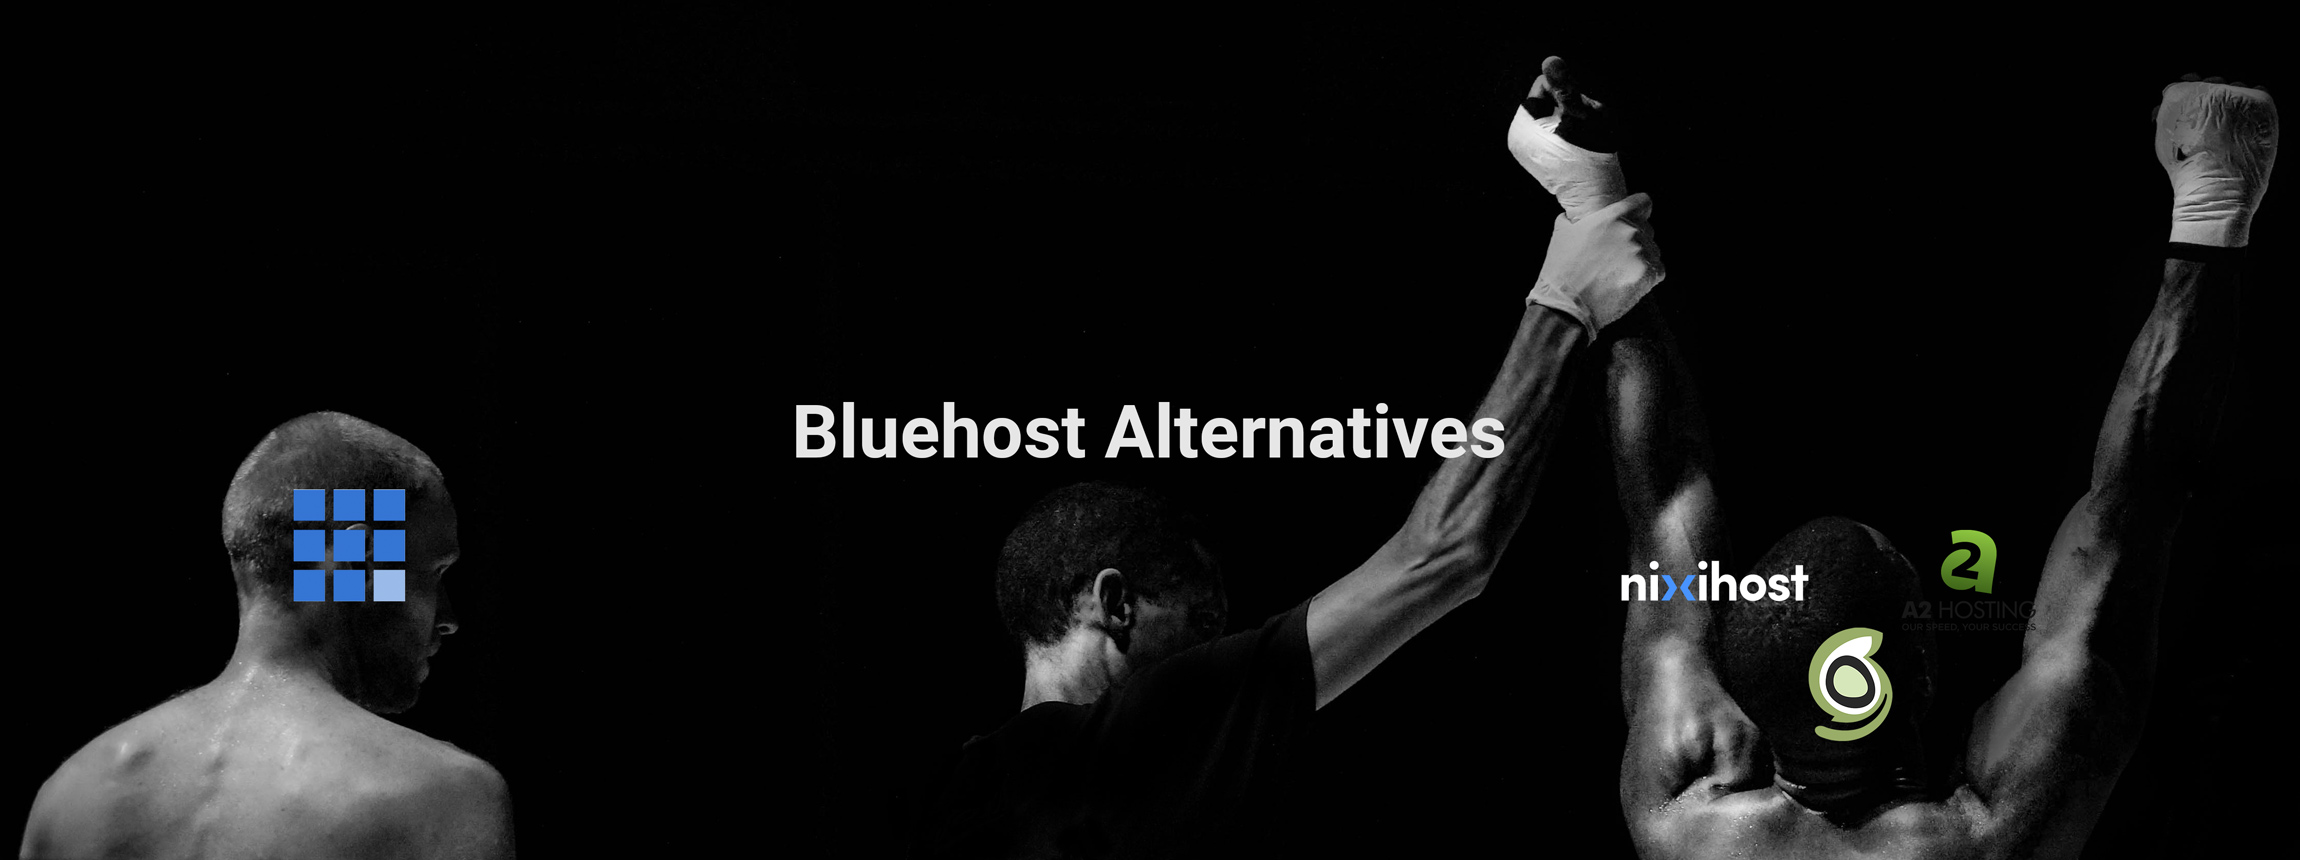 Bluehost alternatives